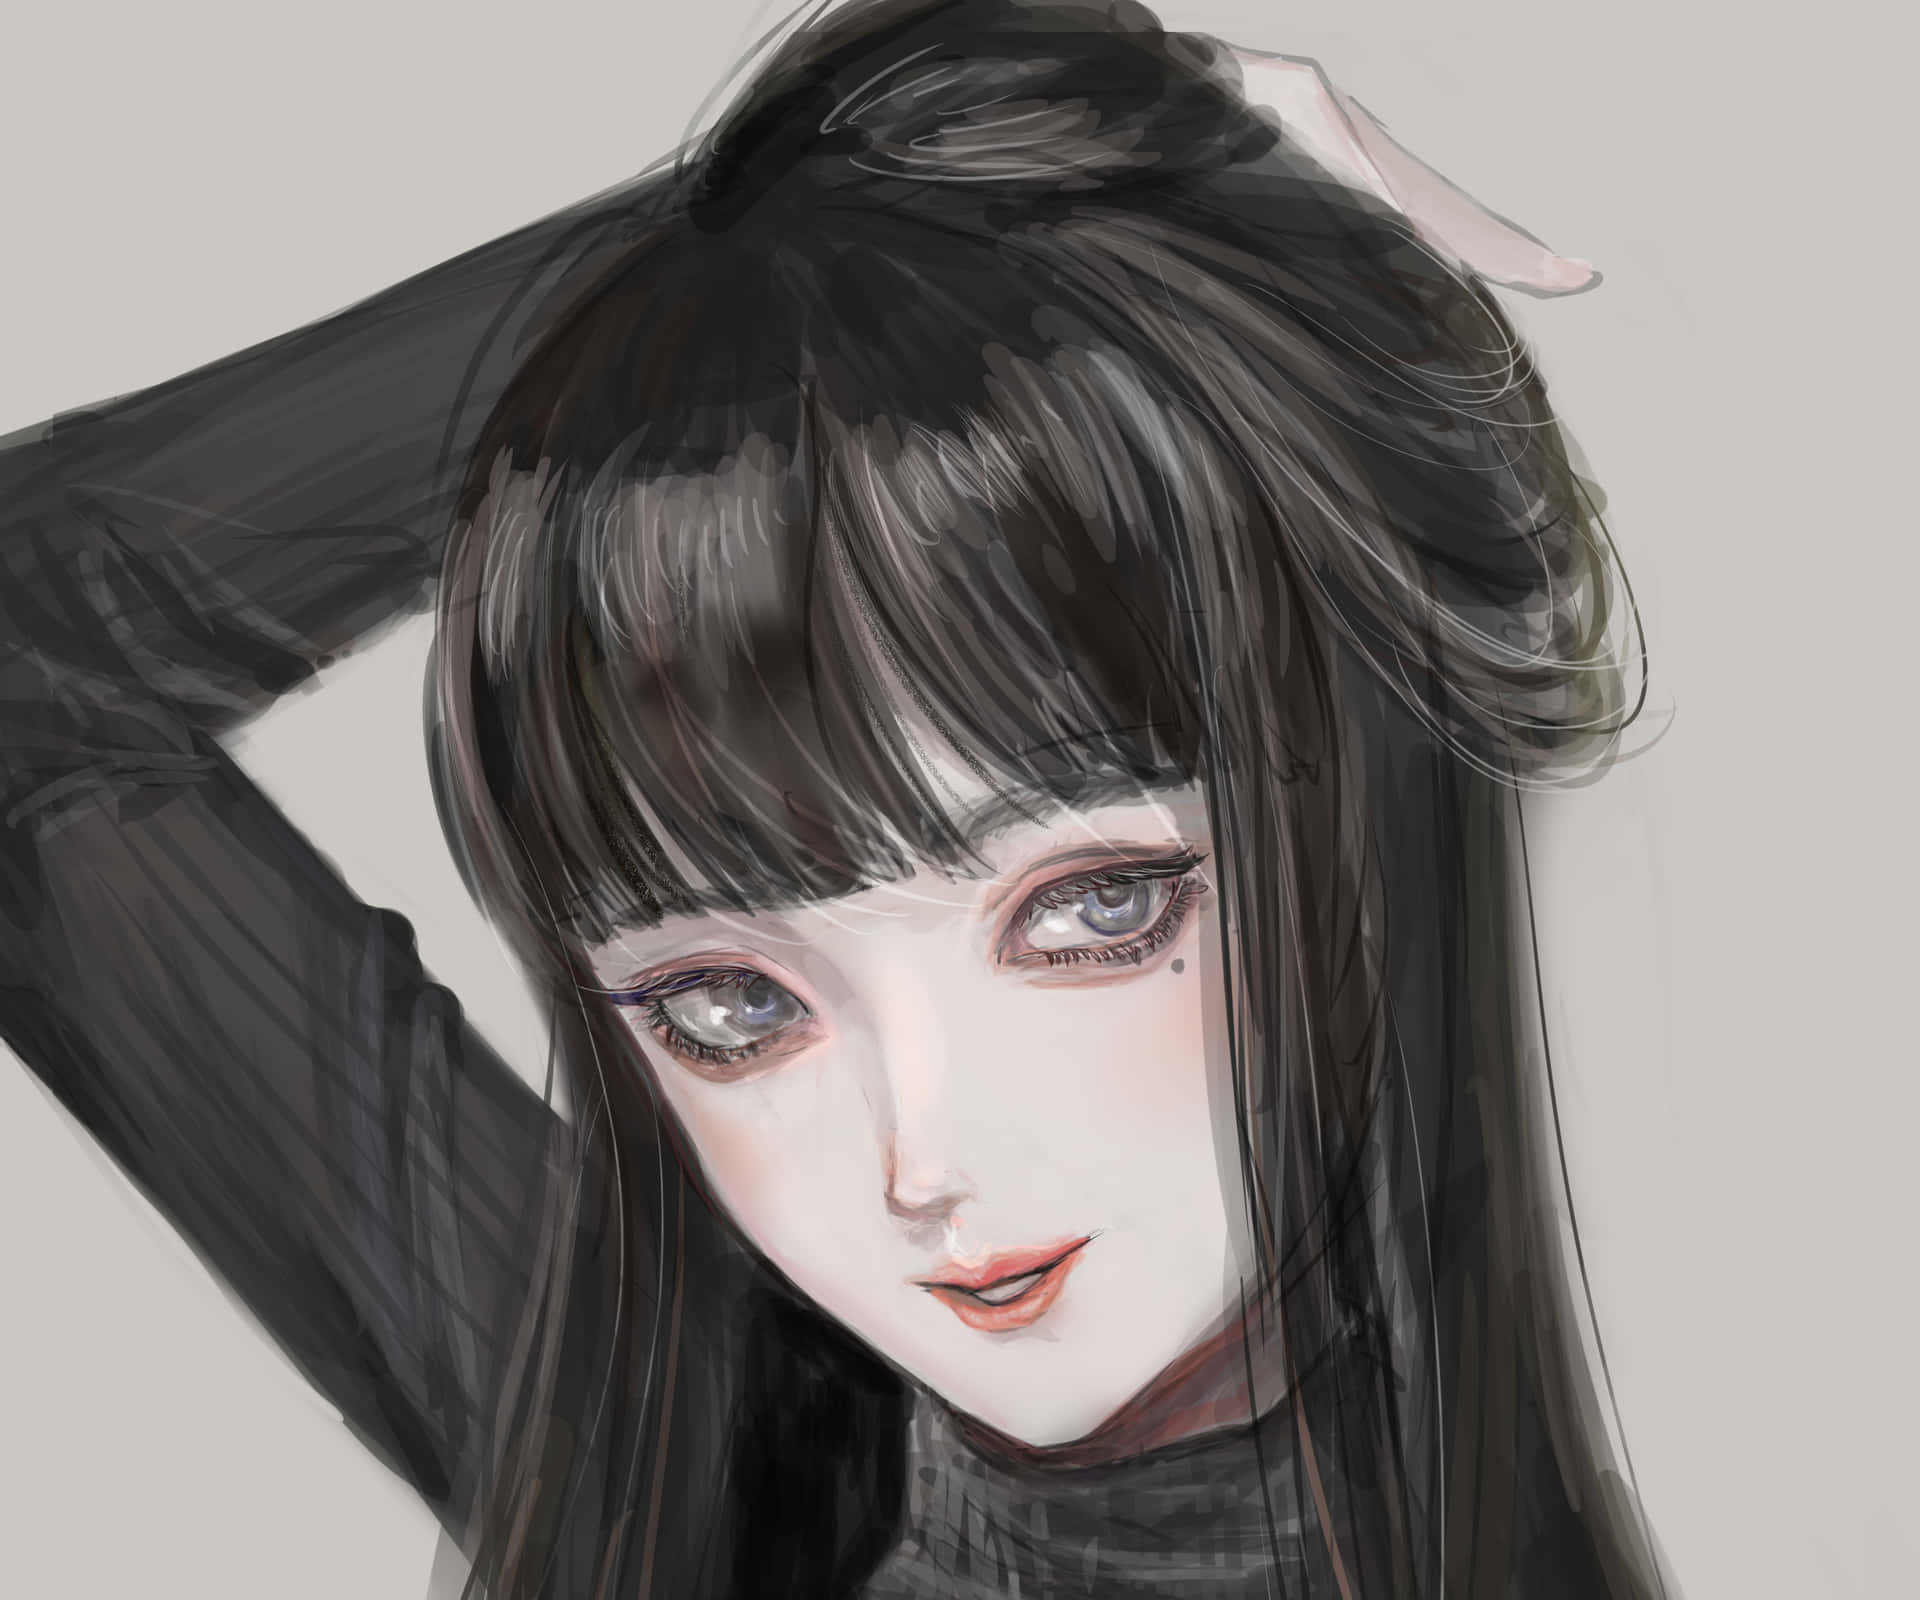 En tegning af en pige med langt sort hår Wallpaper